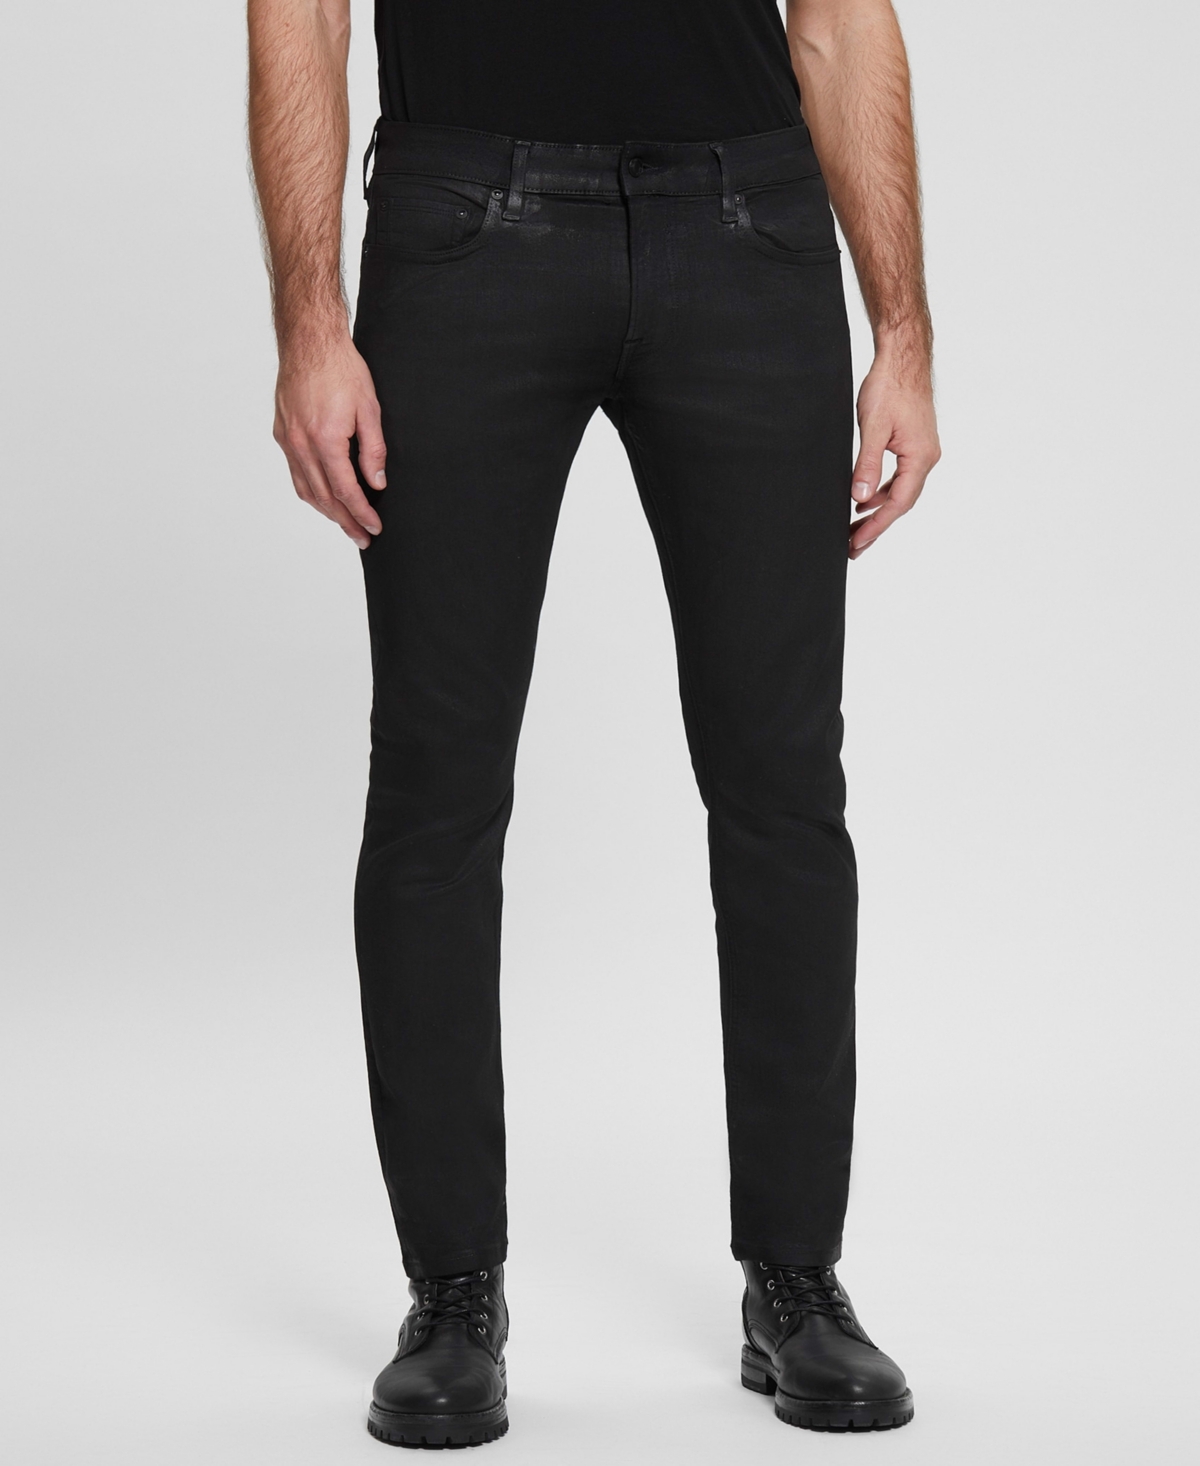 Men's Miami Black Coated Skinny Jeans - Dark Wash